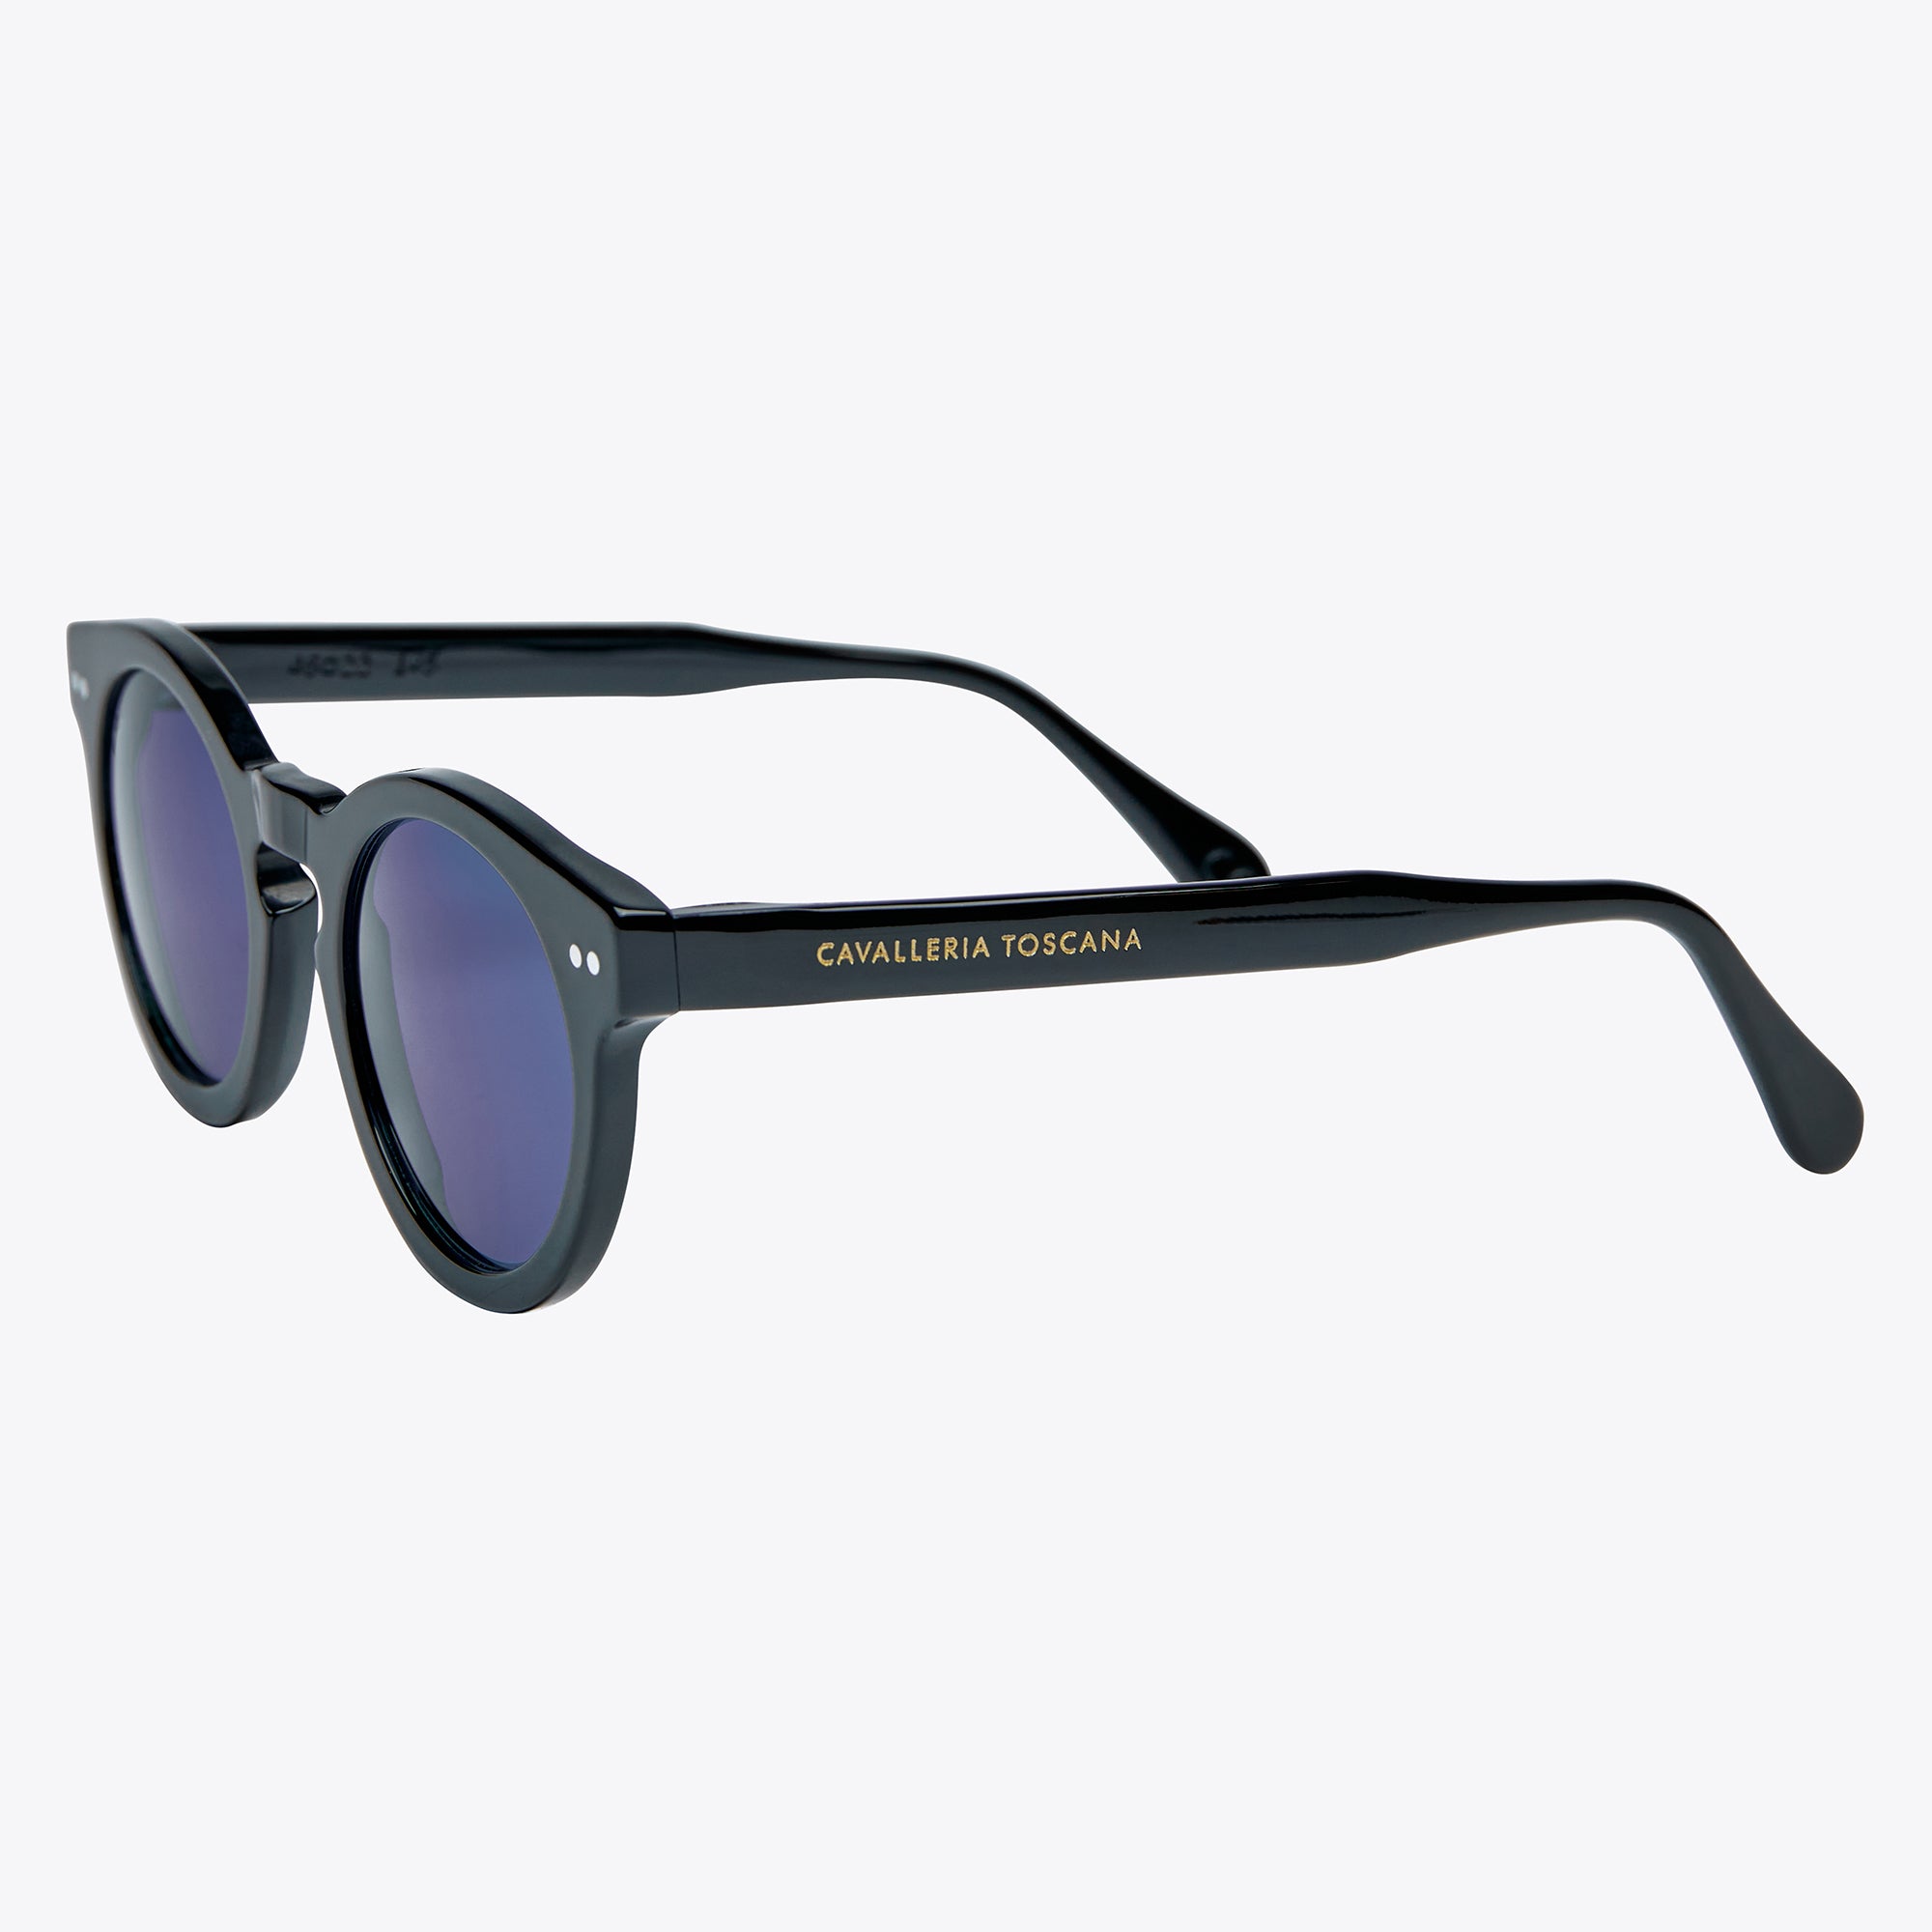 Cavalleria Toscana Sunglasses Black